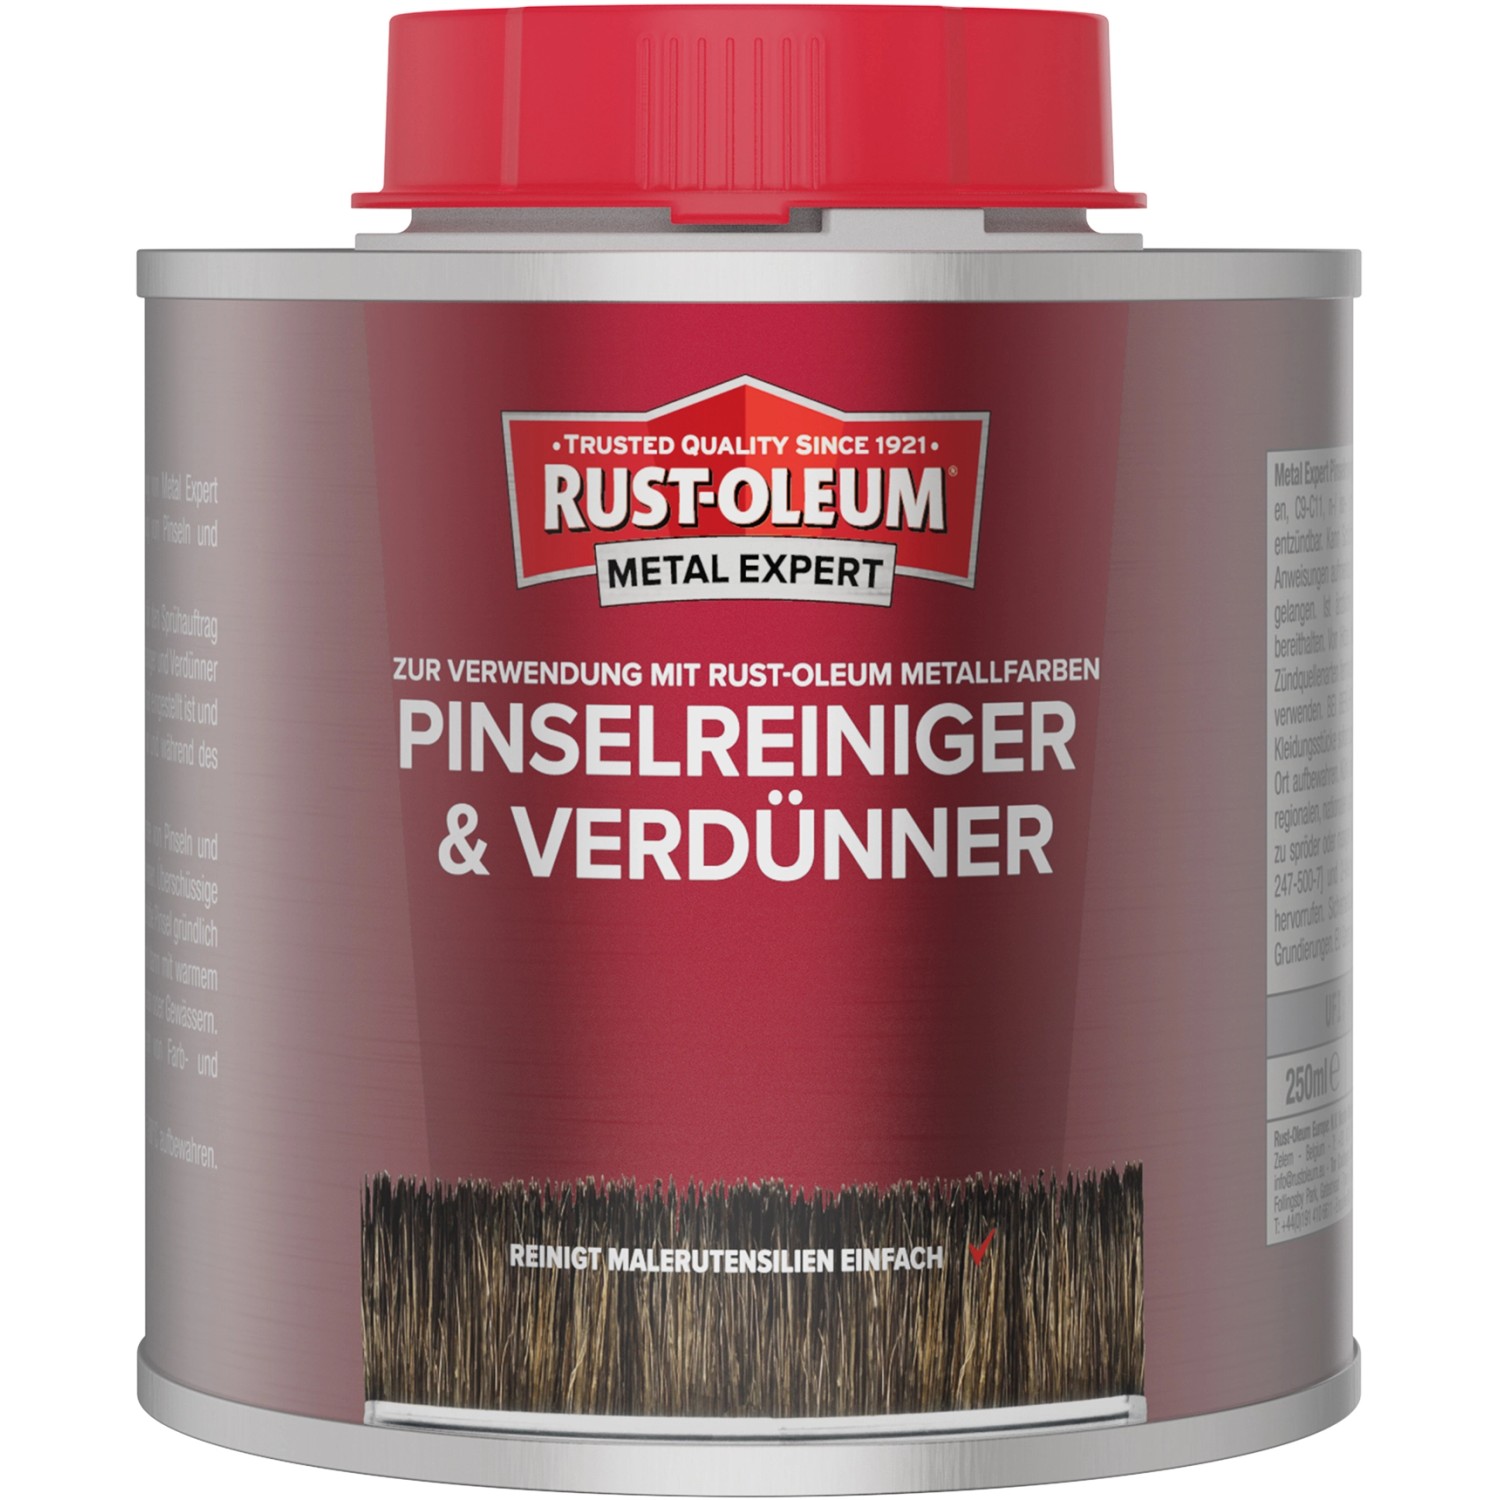 Rust-Oleum Metal Expert Pinselreiniger- und Verdünner 250 ml